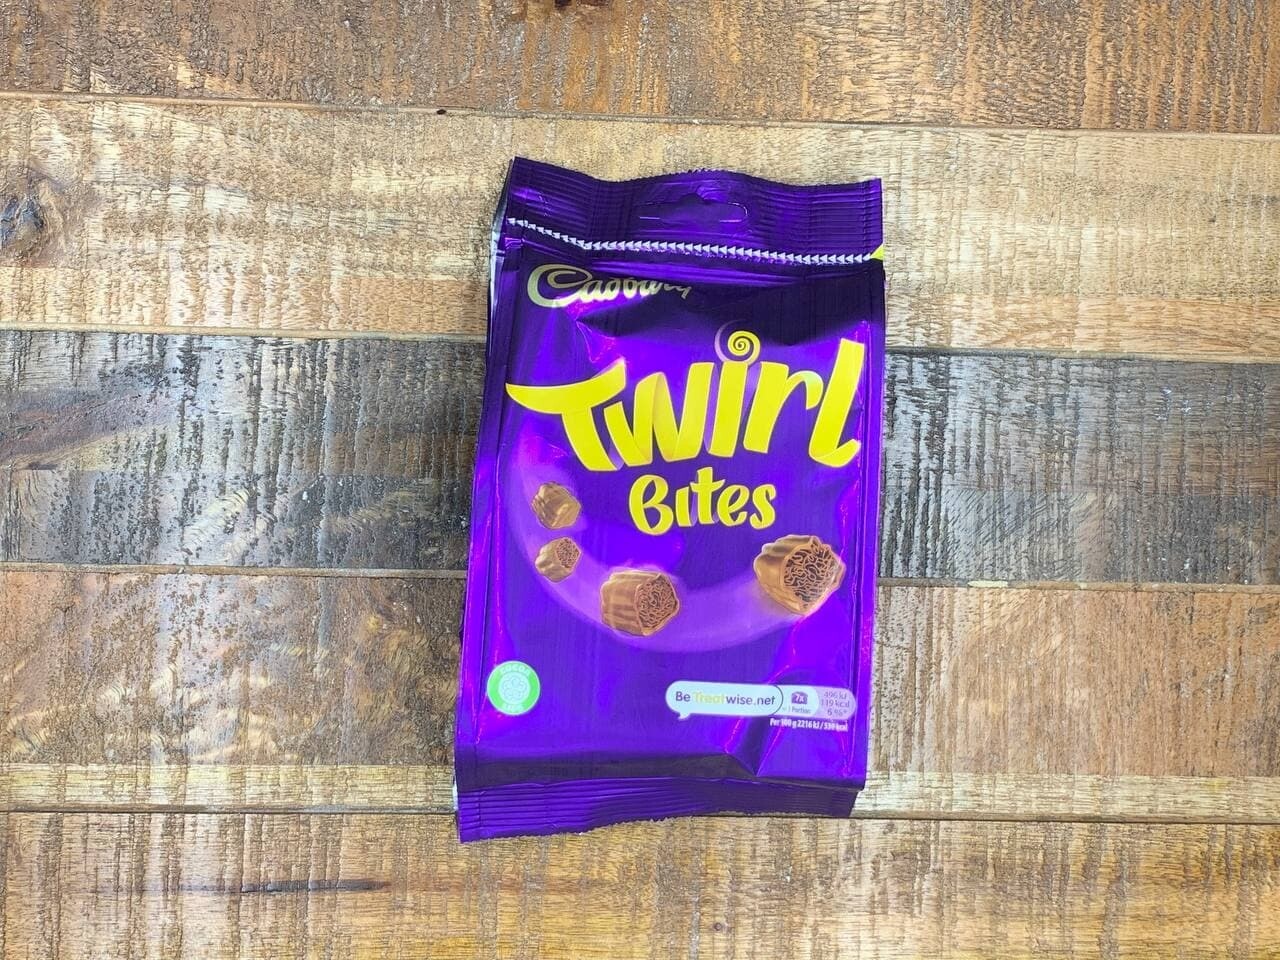 Cadbury Twirl Bites 95g